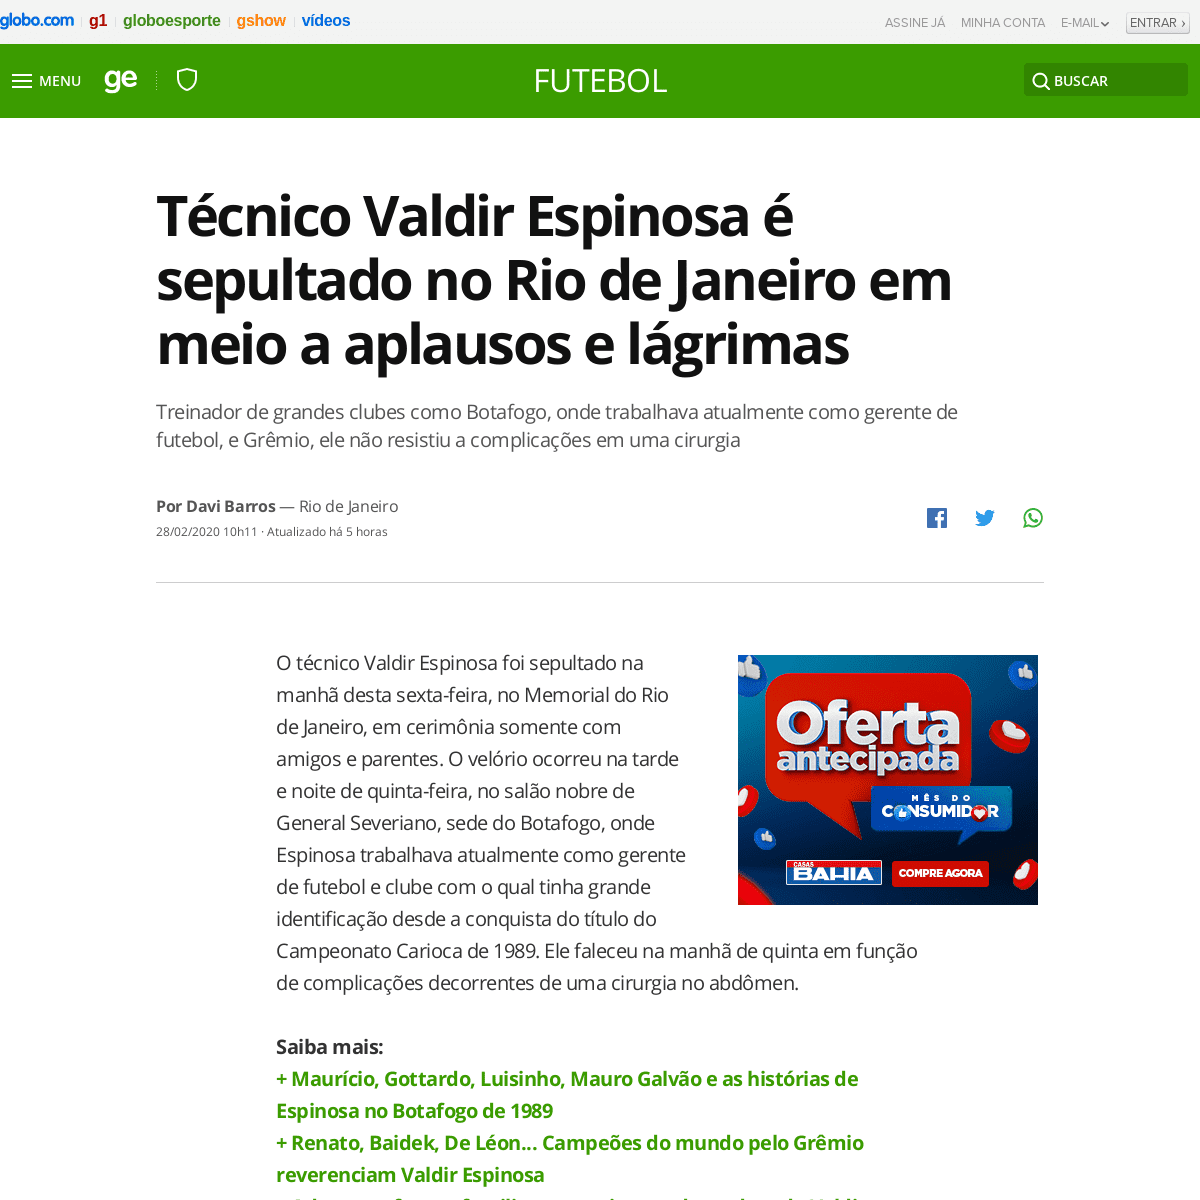 A complete backup of globoesporte.globo.com/futebol/noticia/tecnico-valdir-epinosa-e-sepultado-no-rio-de-janeiro-em-meio-a-aplau